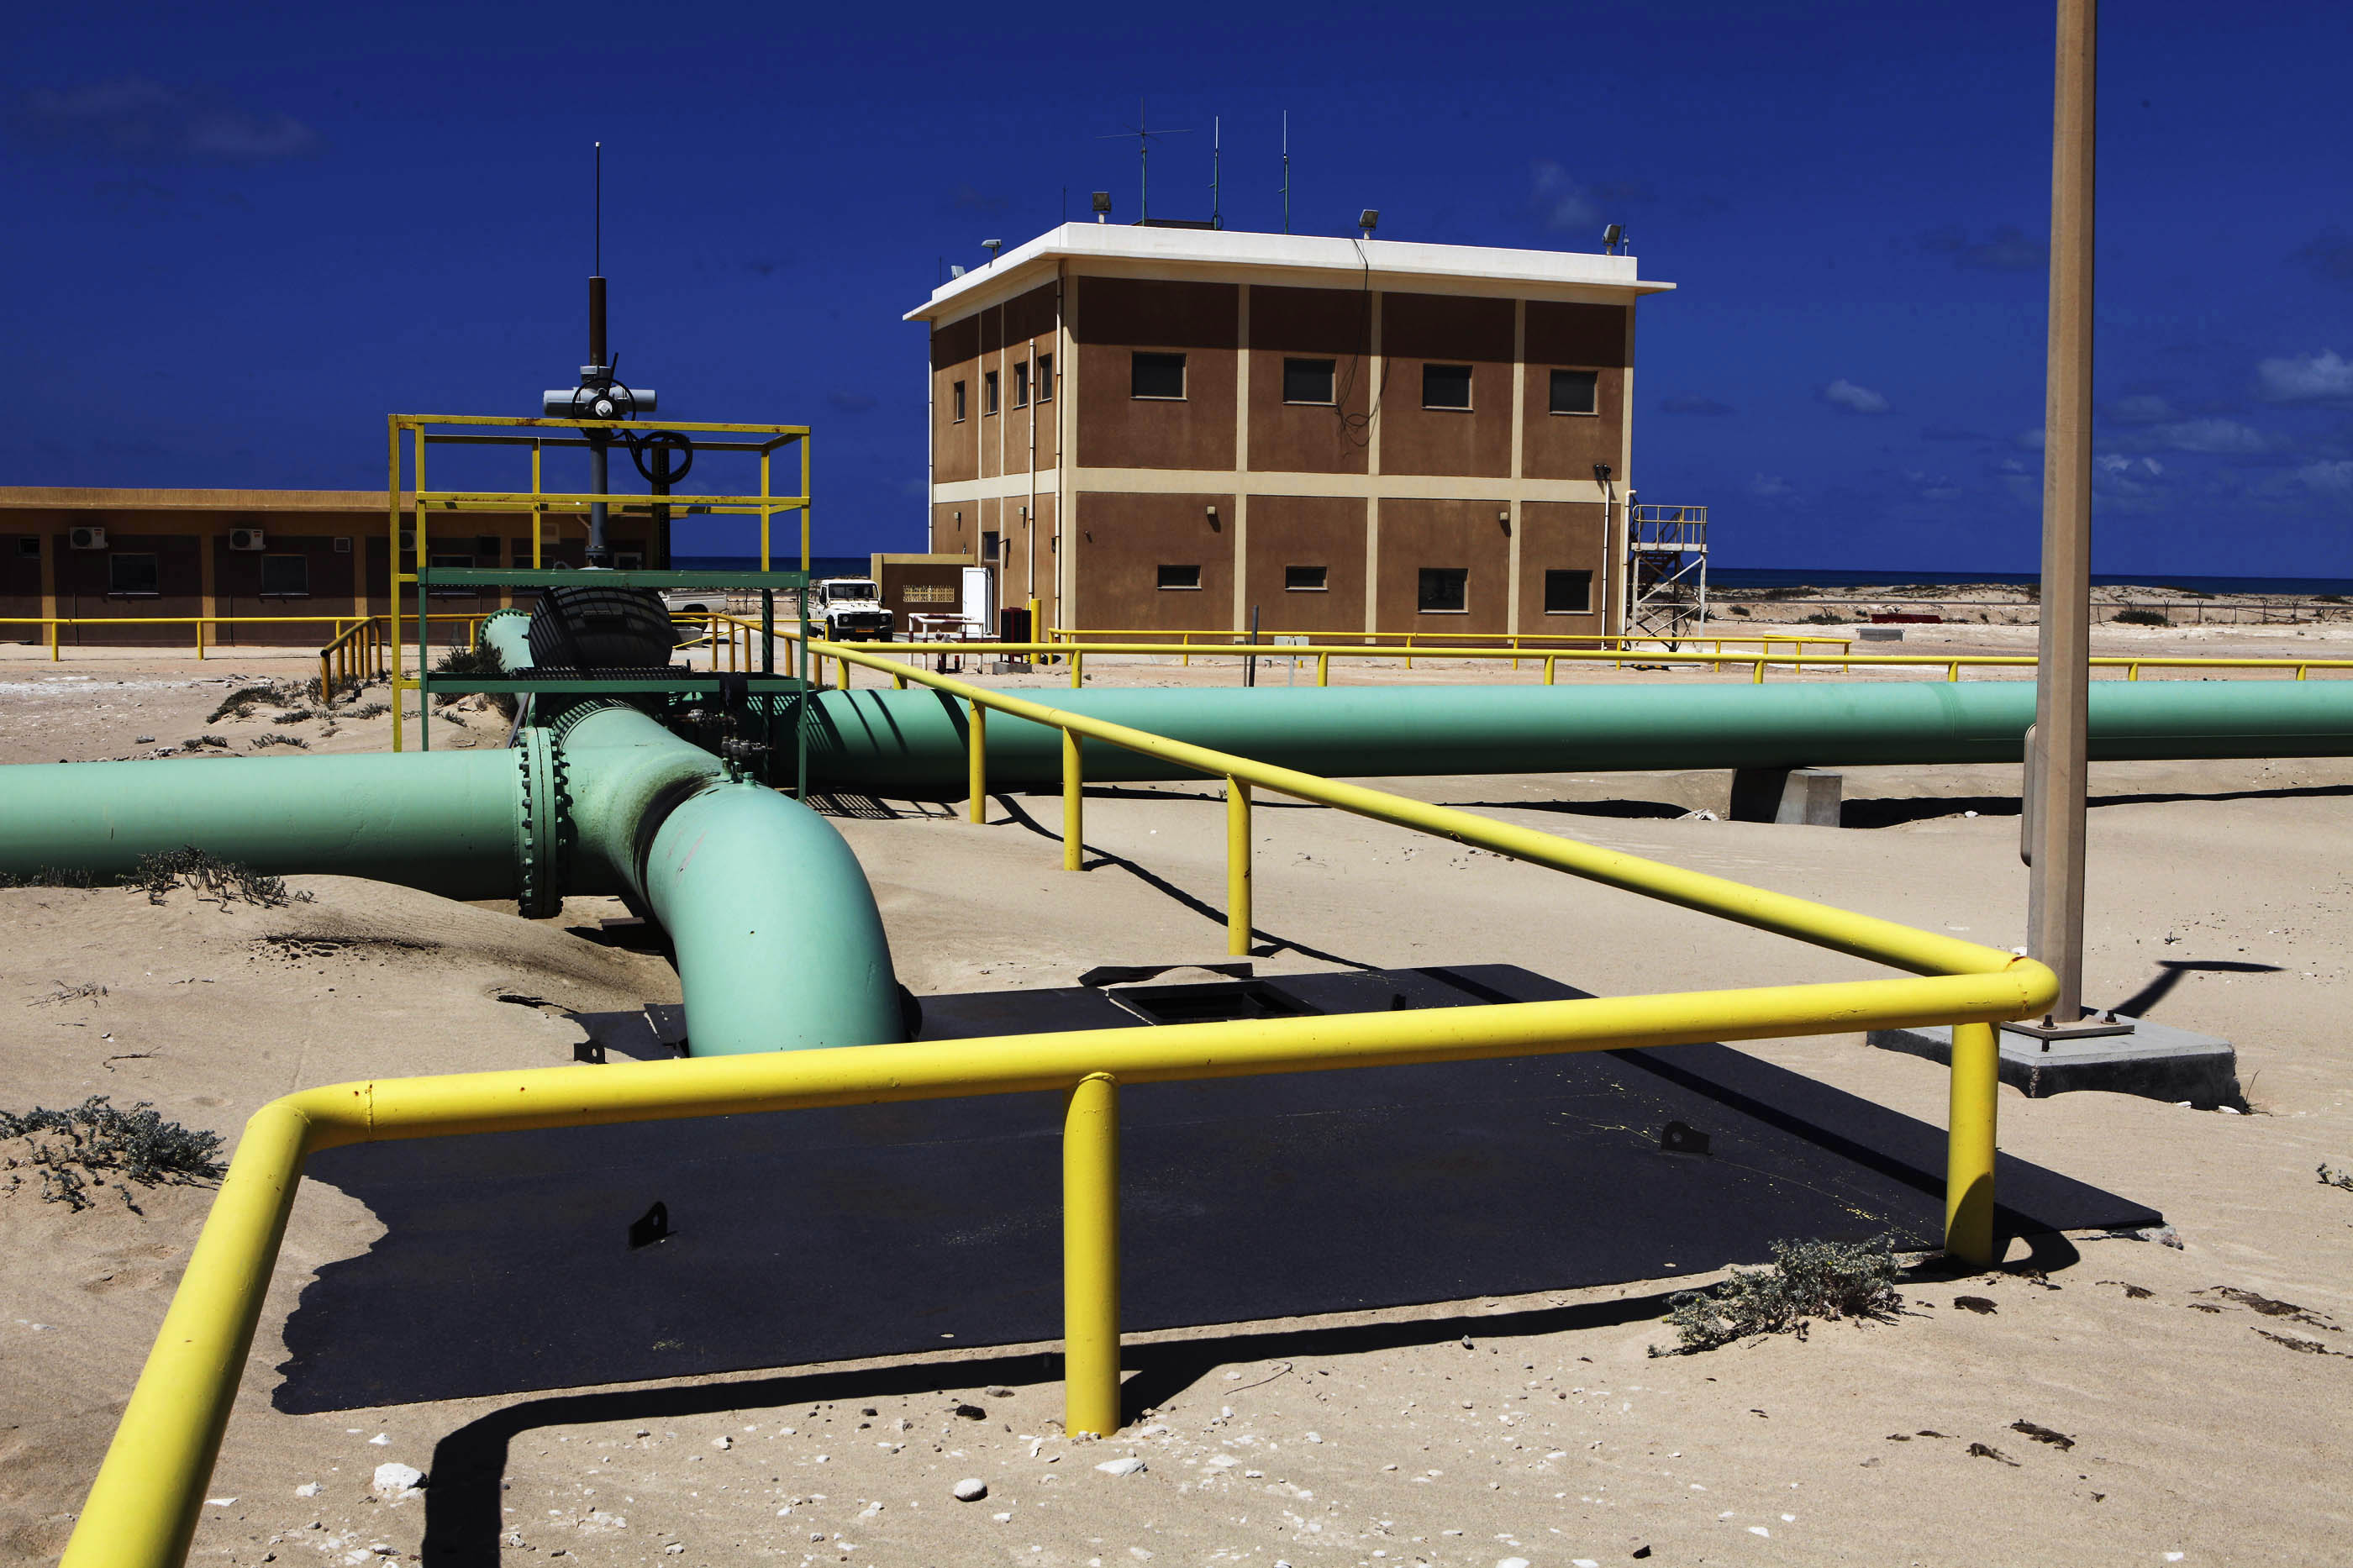 Αργό πετρέλαιο από τη Λιβύη στο Κατάρ